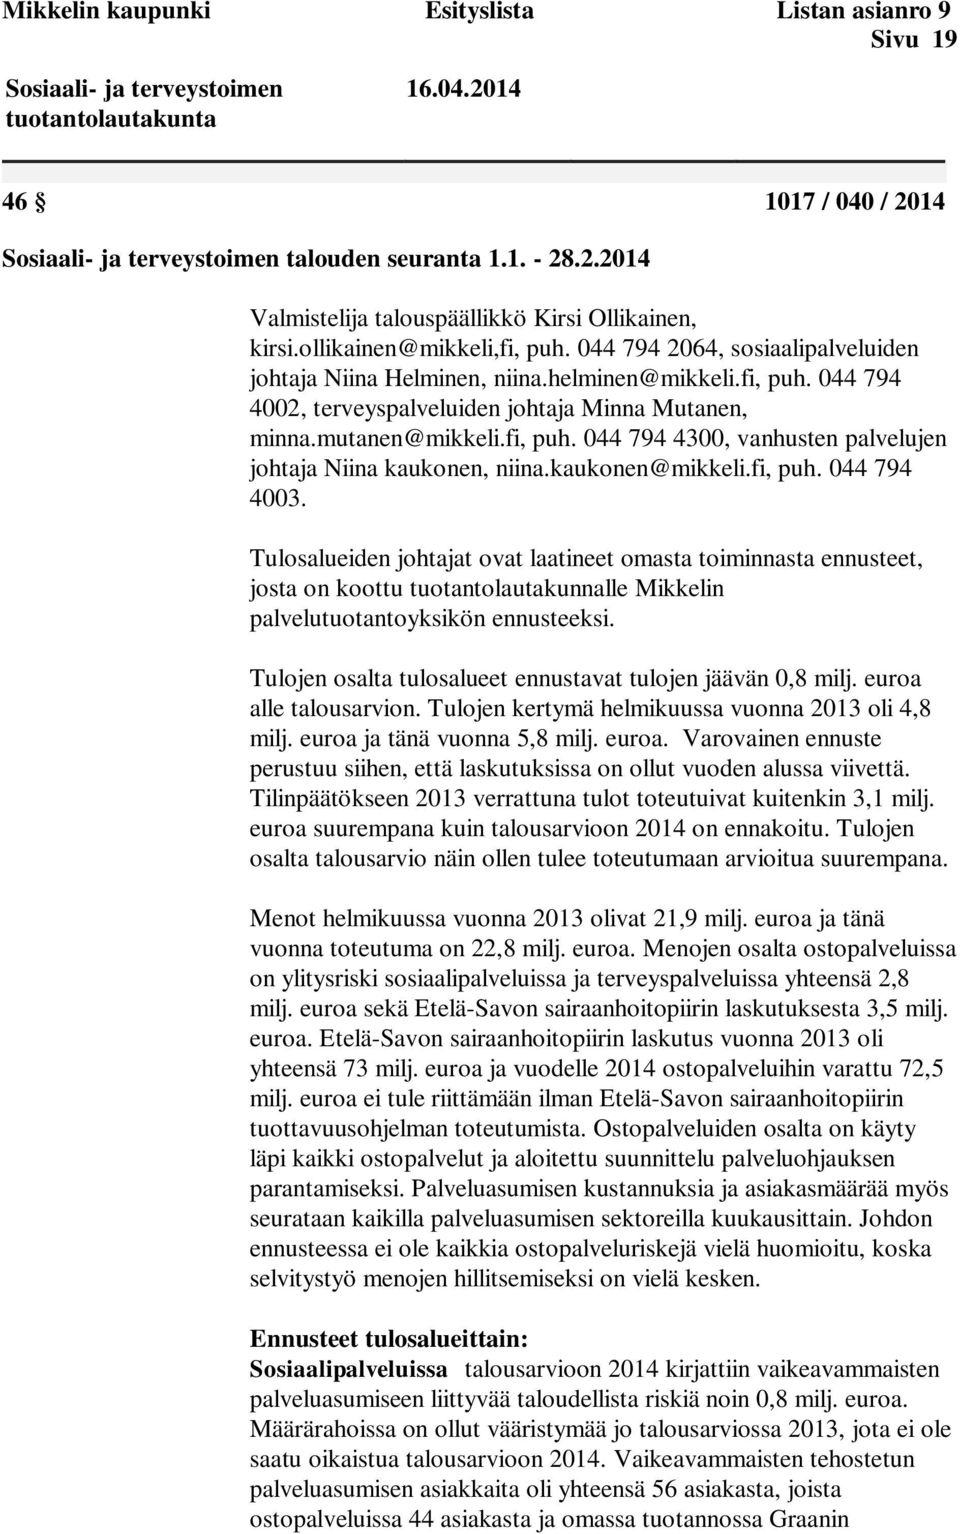 kaukonen@mikkeli.fi, puh. 044 794 4003. Tulosalueiden johtajat ovat laatineet omasta toiminnasta ennusteet, josta on koottu tuotantolautakunnalle Mikkelin palvelutuotantoyksikön ennusteeksi.